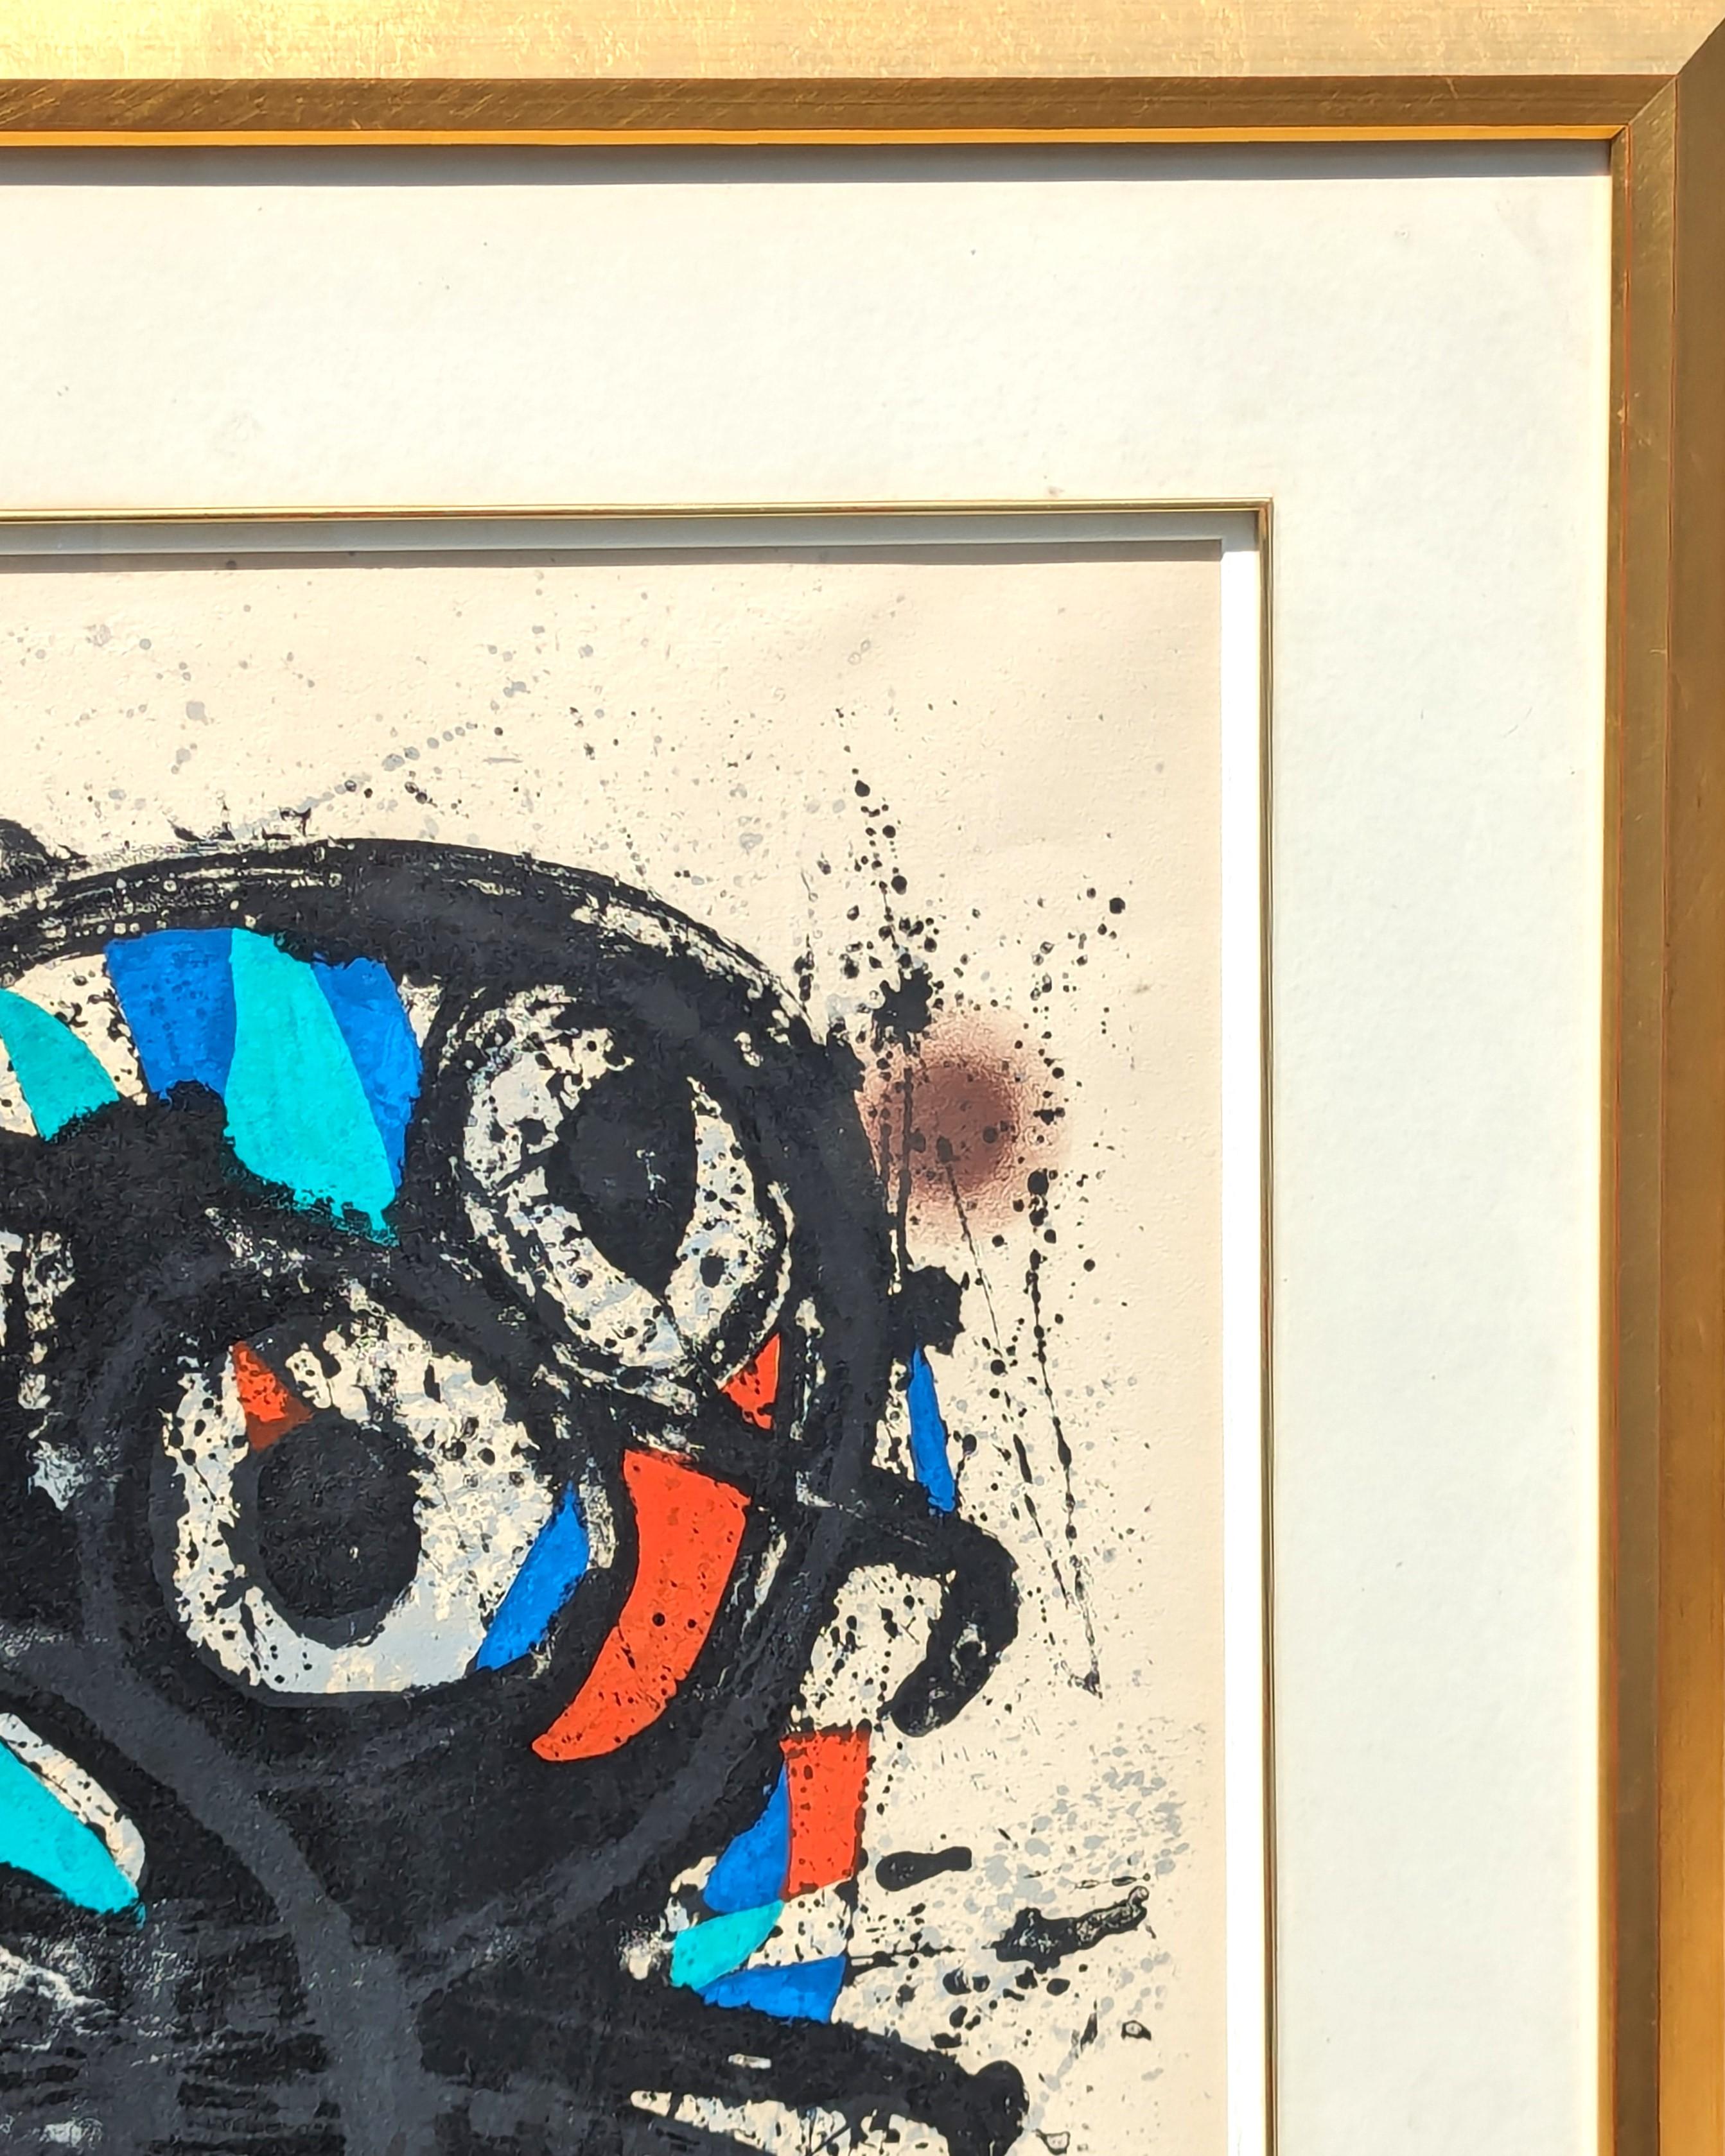 Lithographie abstraite moderne et colorée du célèbre artiste surréaliste Joan Miro. L'œuvre a été créée à l'occasion d'une exposition au Grand Palais à Paris, en France, en 1974. Signé et numéroté 36/50 au crayon le long du bord inférieur du recto.